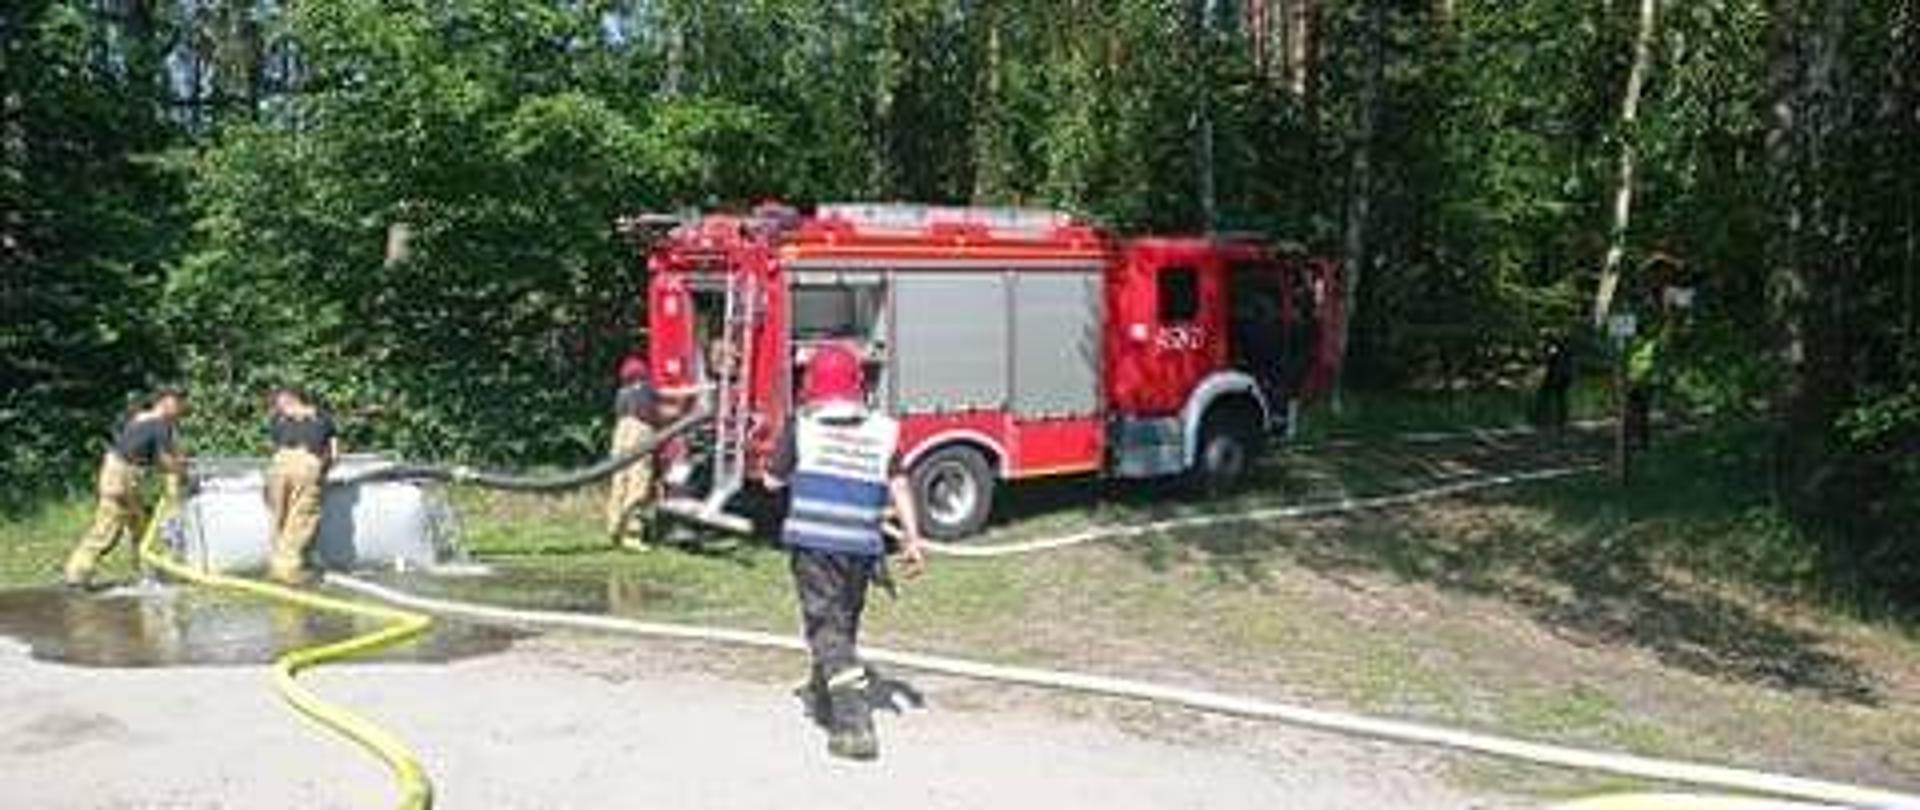 Zdjęcie przedstawia wóz straży pożarnej w lesie w czasie ćwiczeń. Strażacy pompujaąwode do rozkładanego zbiornika z wodą.